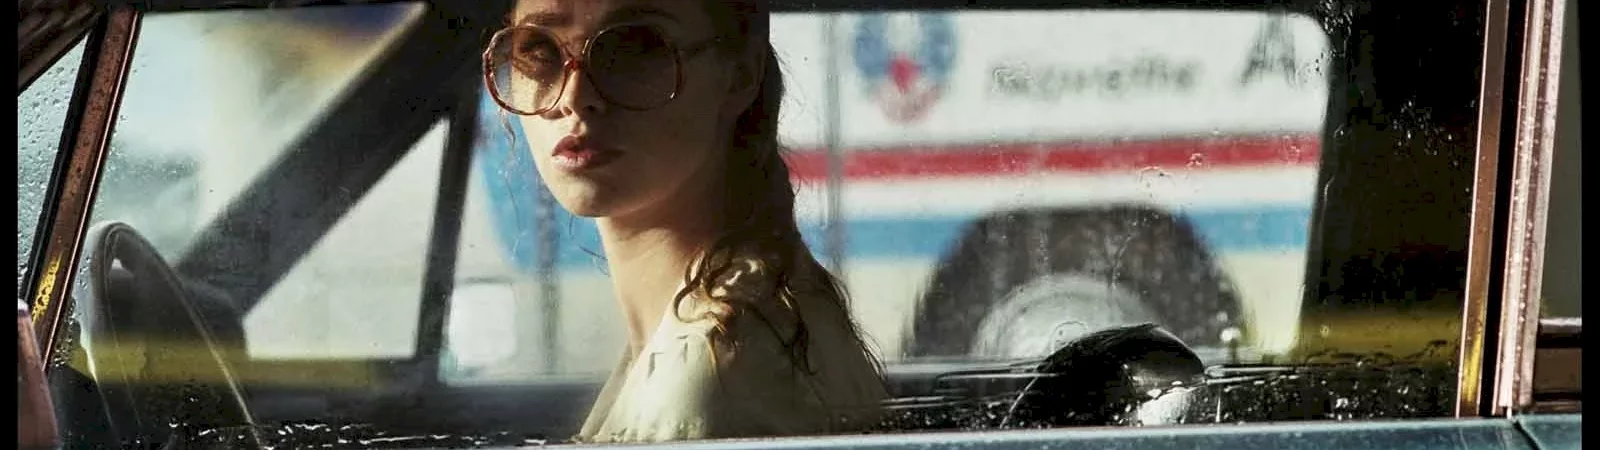 Photo du film : La Dame dans l'auto avec des lunettes et un fusil